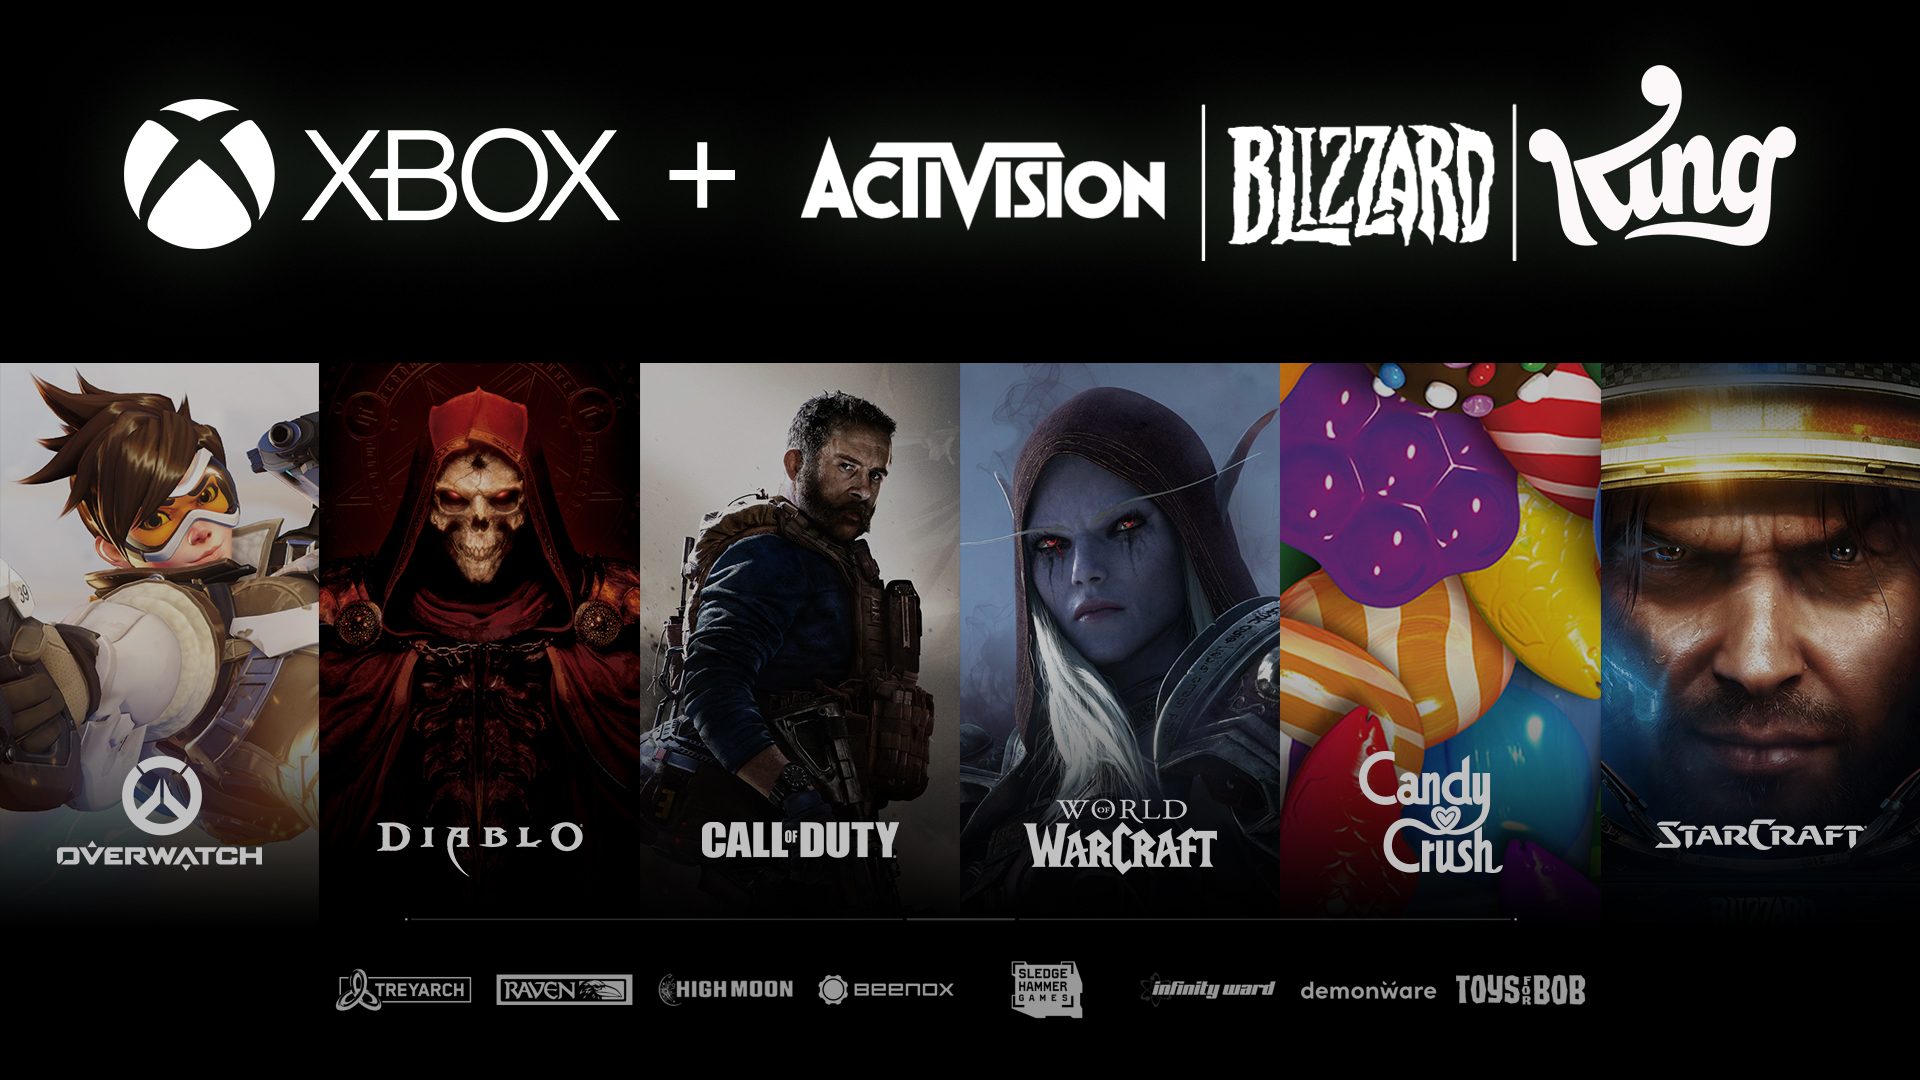 Activision Blizzard schließt sich Team Xbox an